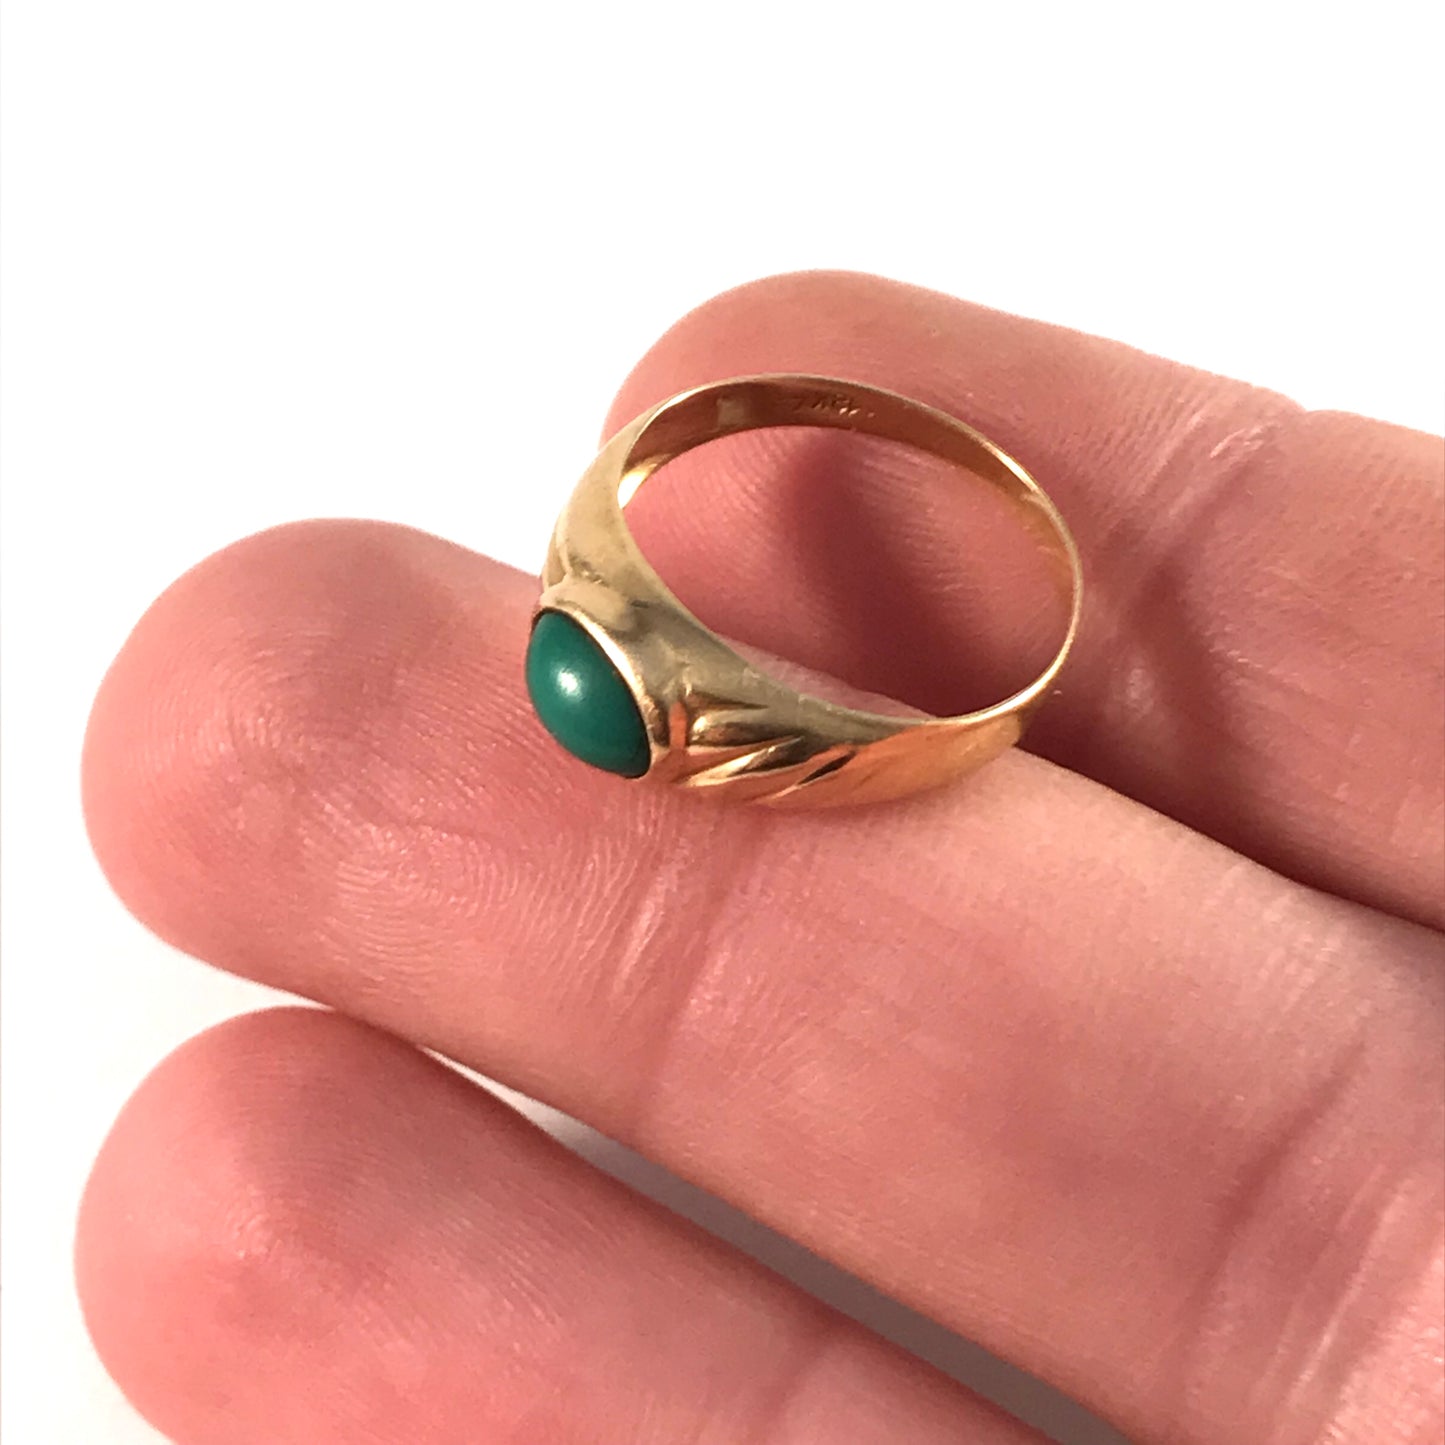 Swedish Import Mid Century 18k Gold Turquoise Ring. Size 7